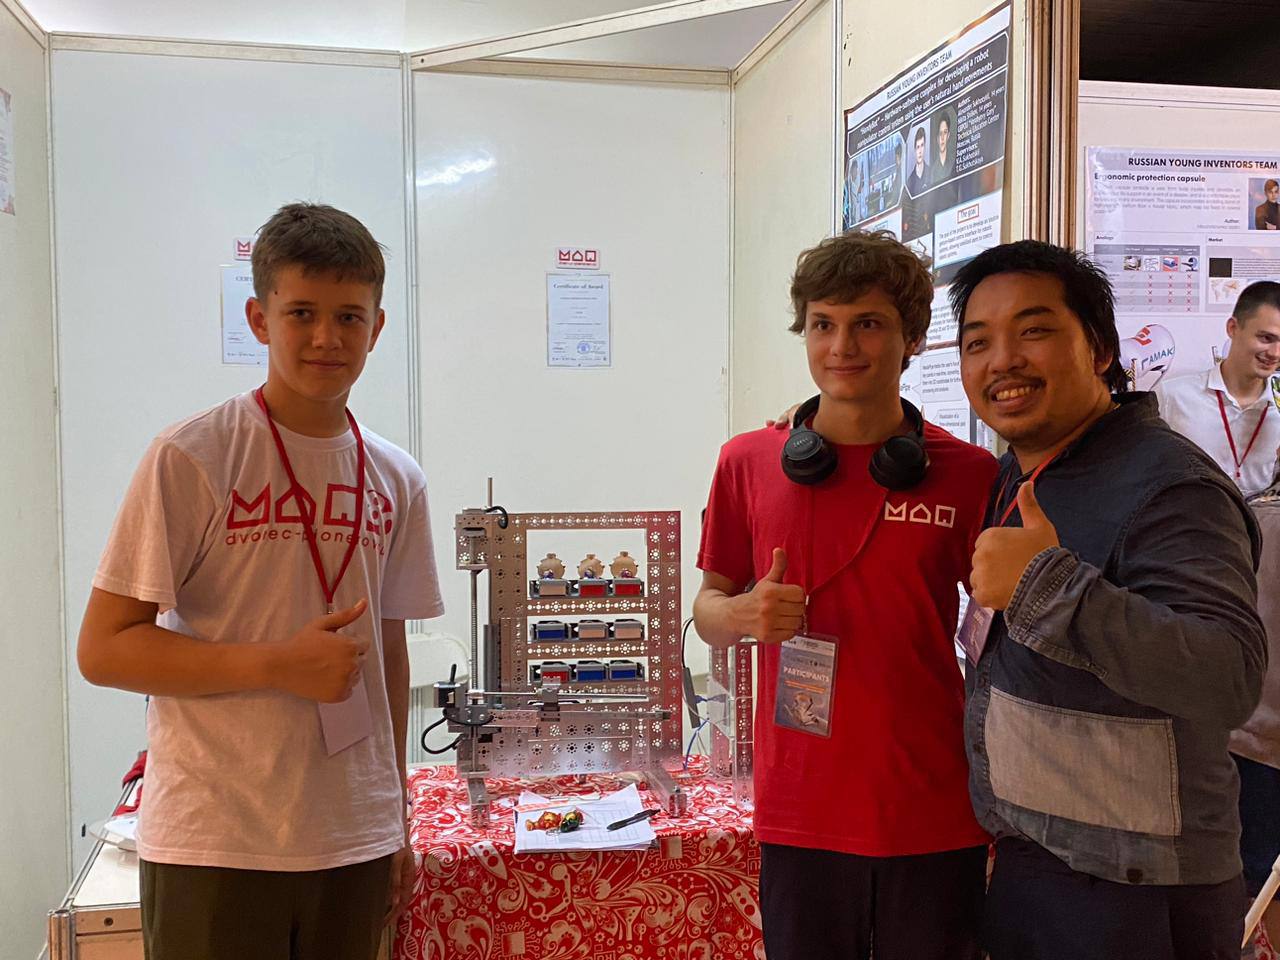 Учащиеся центра технического образования Московского дворца пионеров завоевали золотую медаль на международном конкурсе юных изобретателей